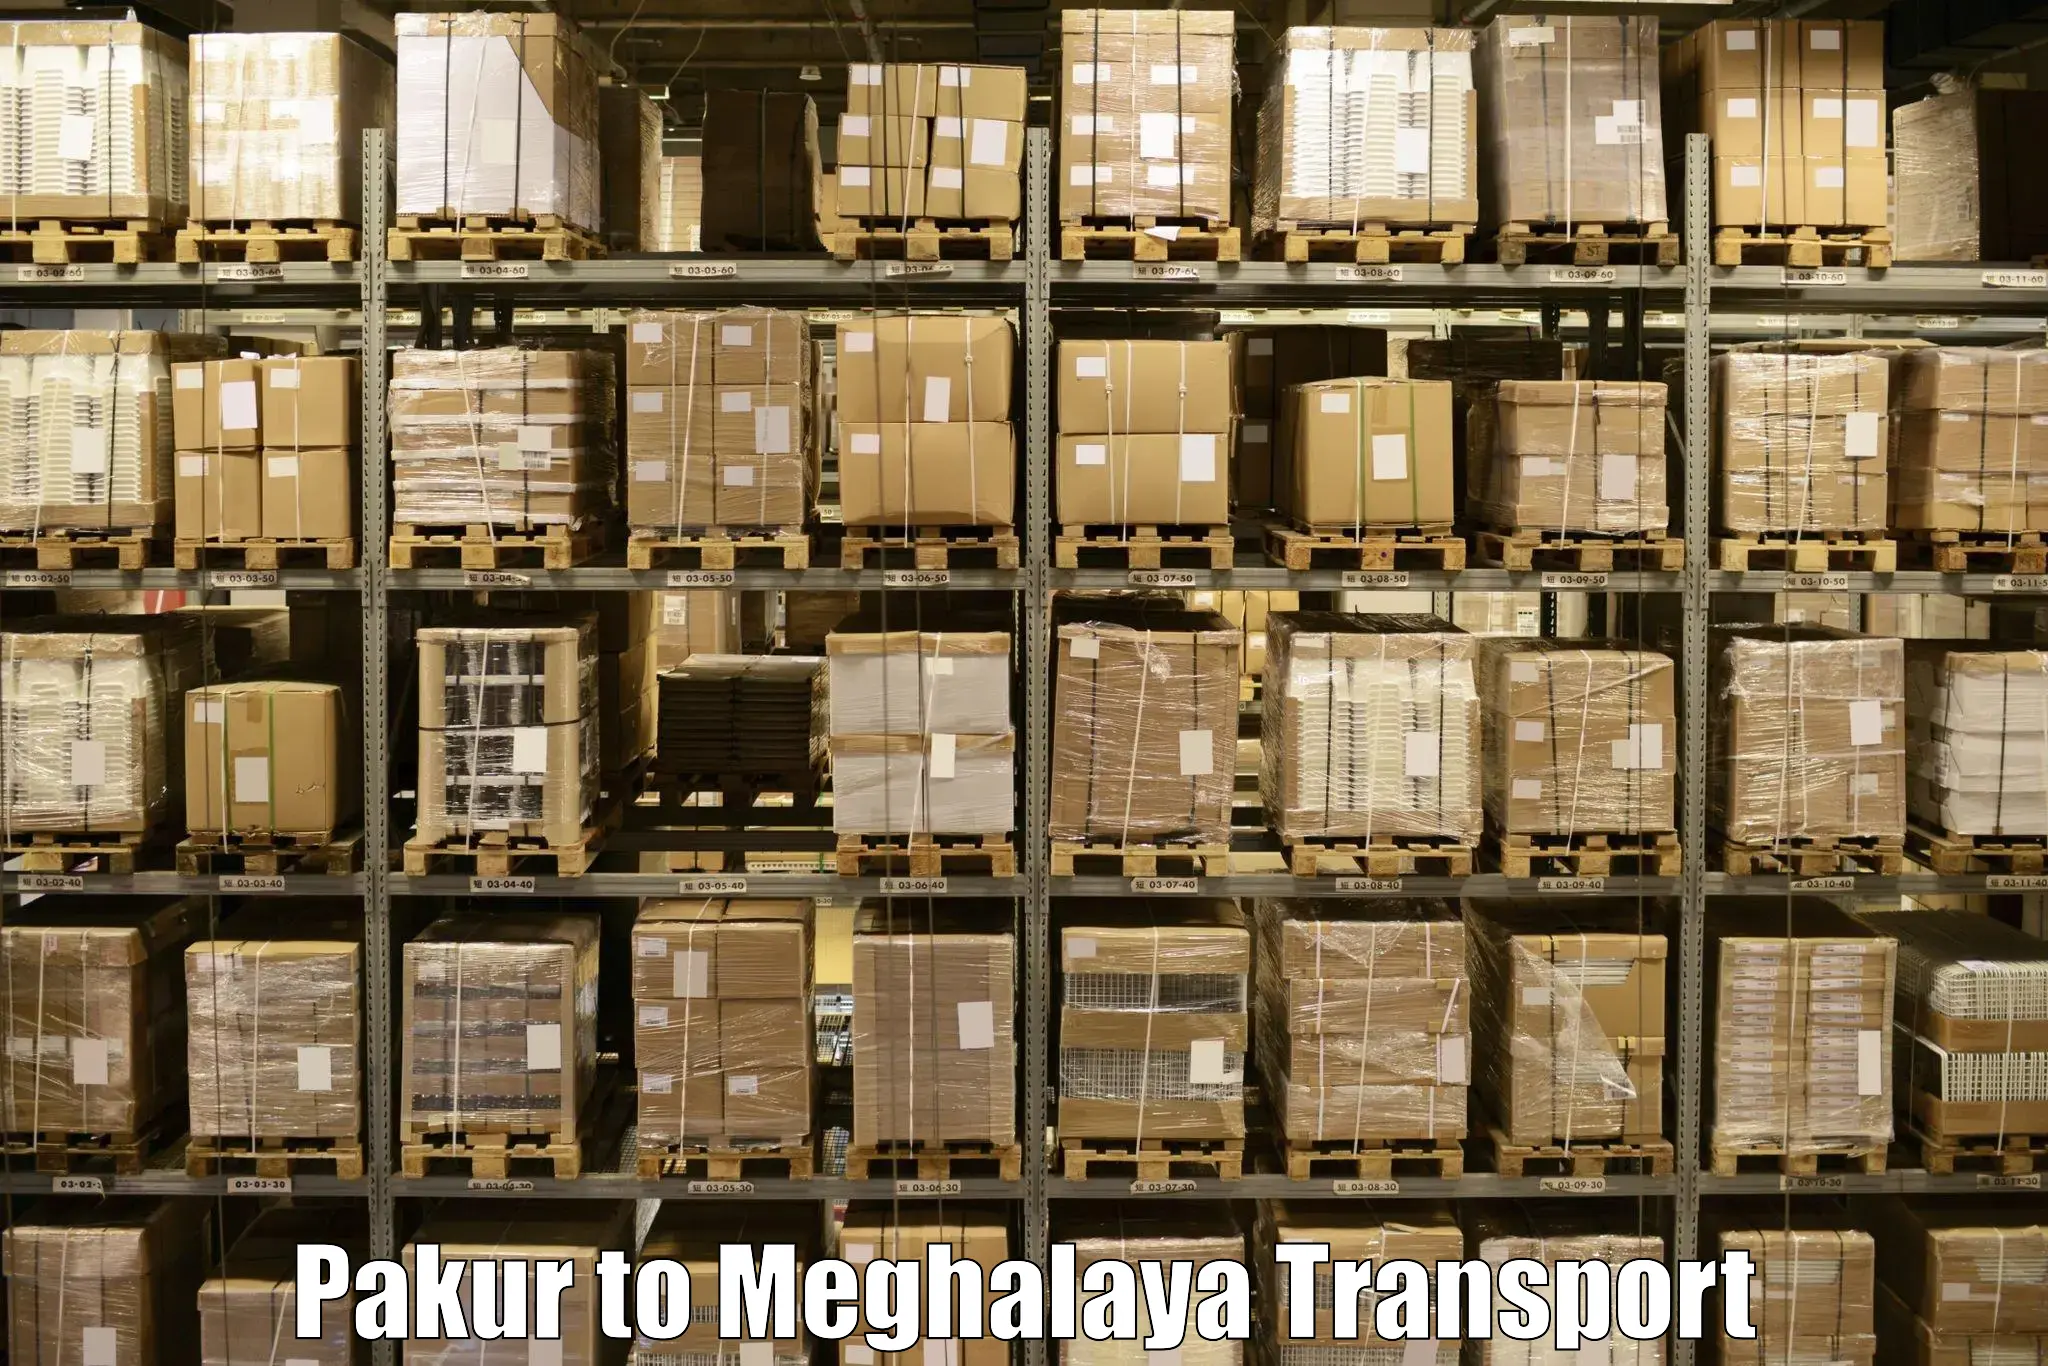 Transport in sharing Pakur to Meghalaya